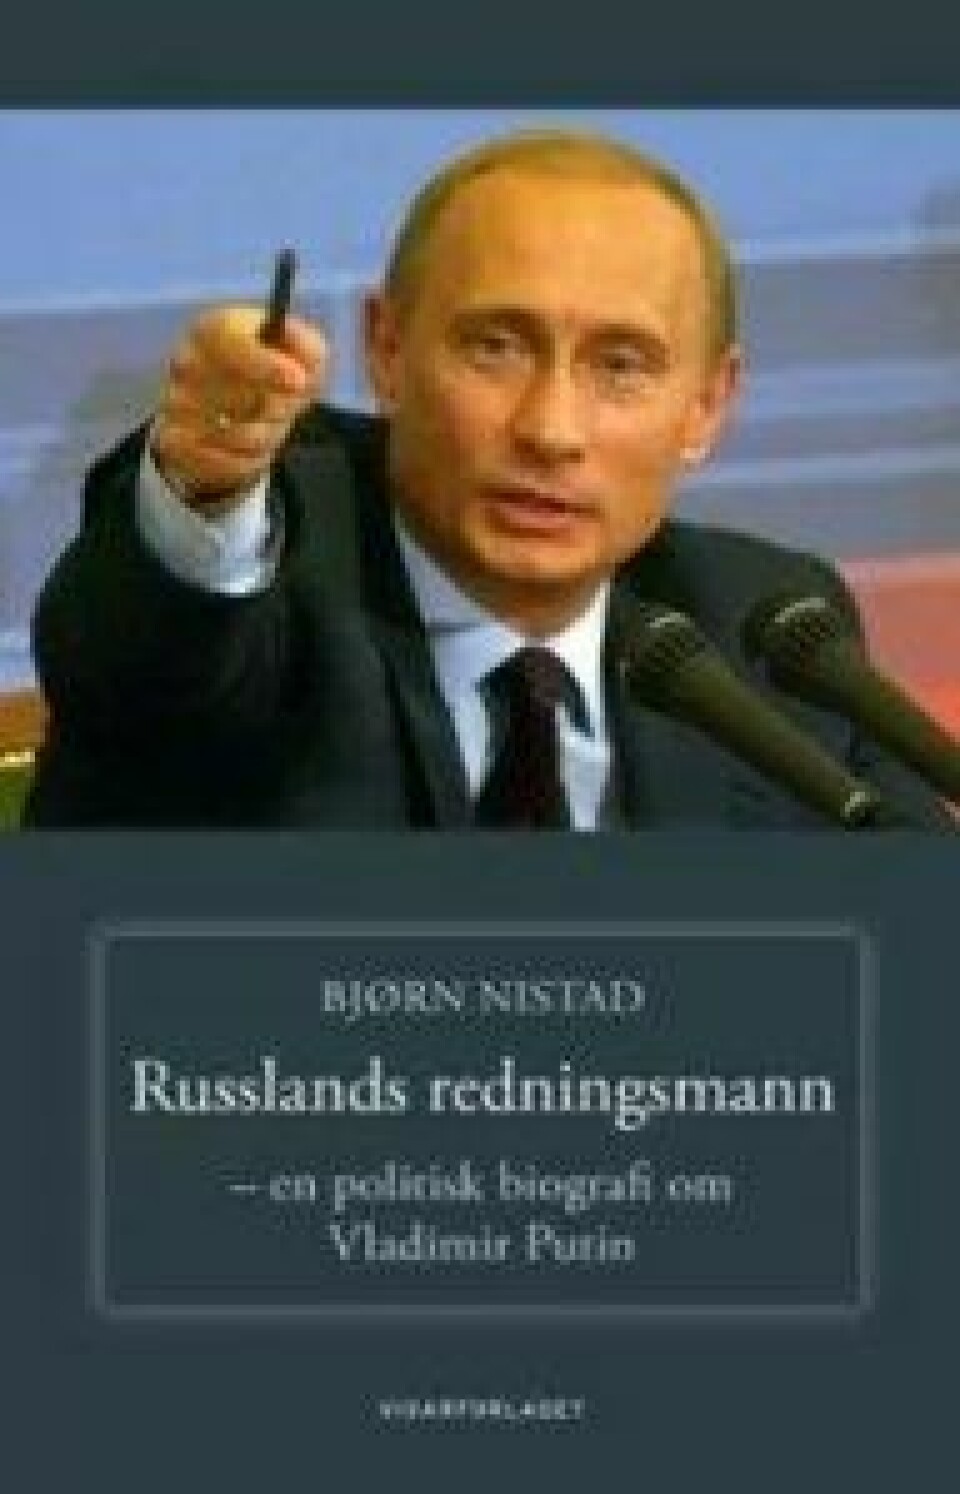 Russlands redningsmann – en politisk biografi om Vladimir Putin av Bjørn Nistad, Vidarforlaget 2016.